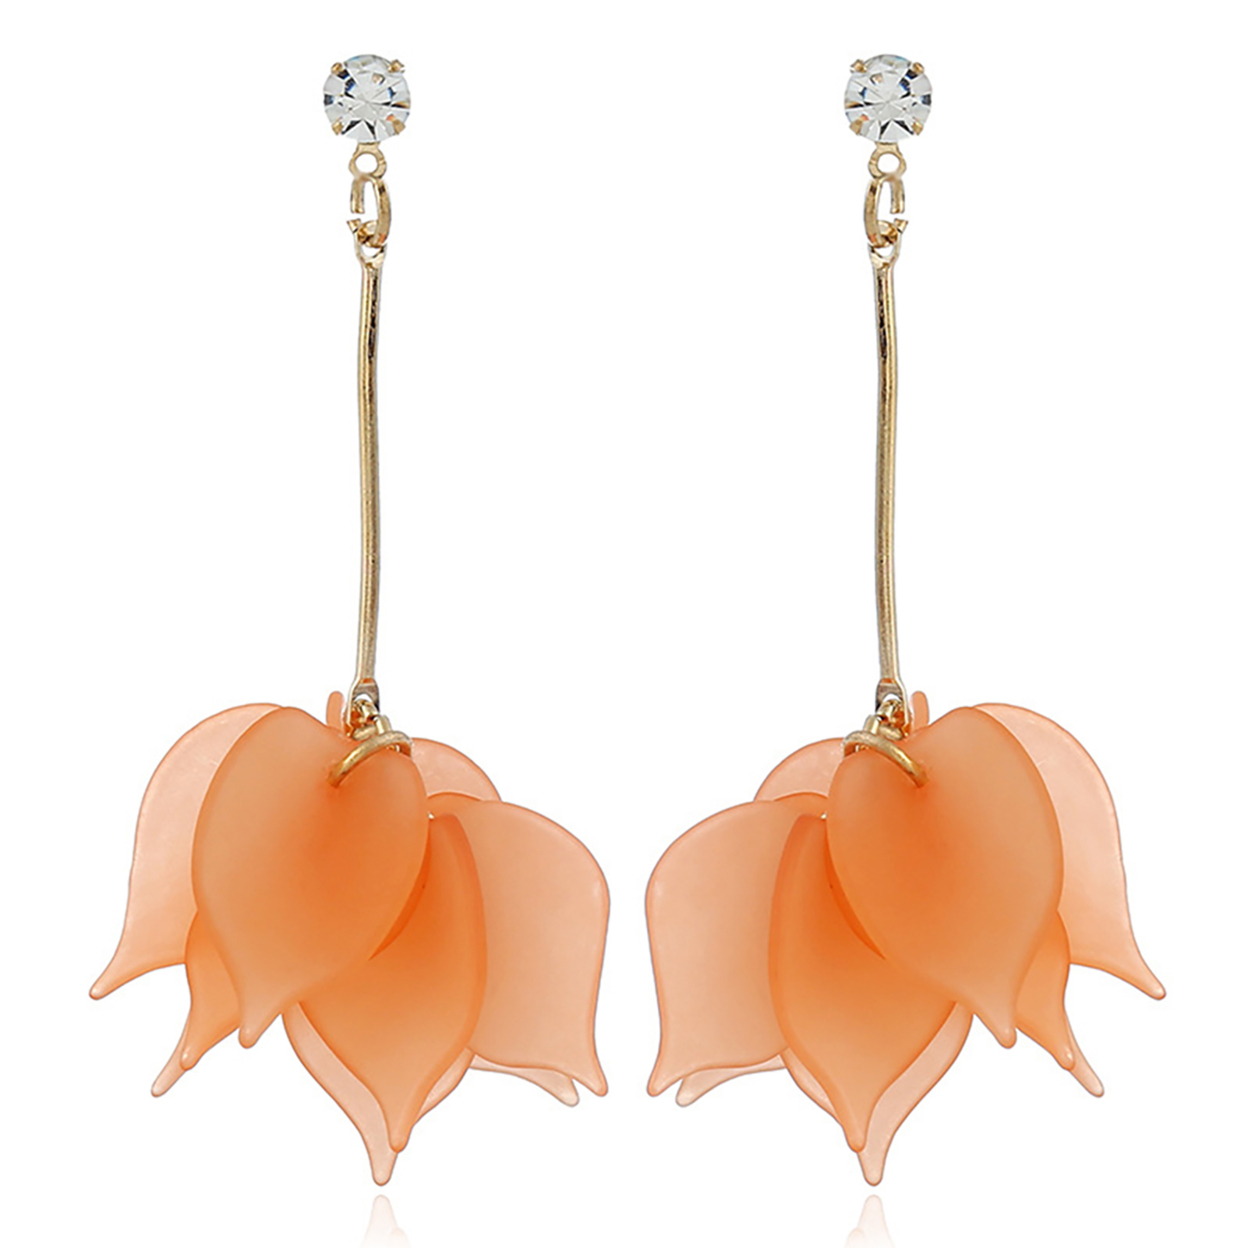 Alloy Flower Petals Jewelry Earrings Water Drop Pendant Stud Earrings for Womens